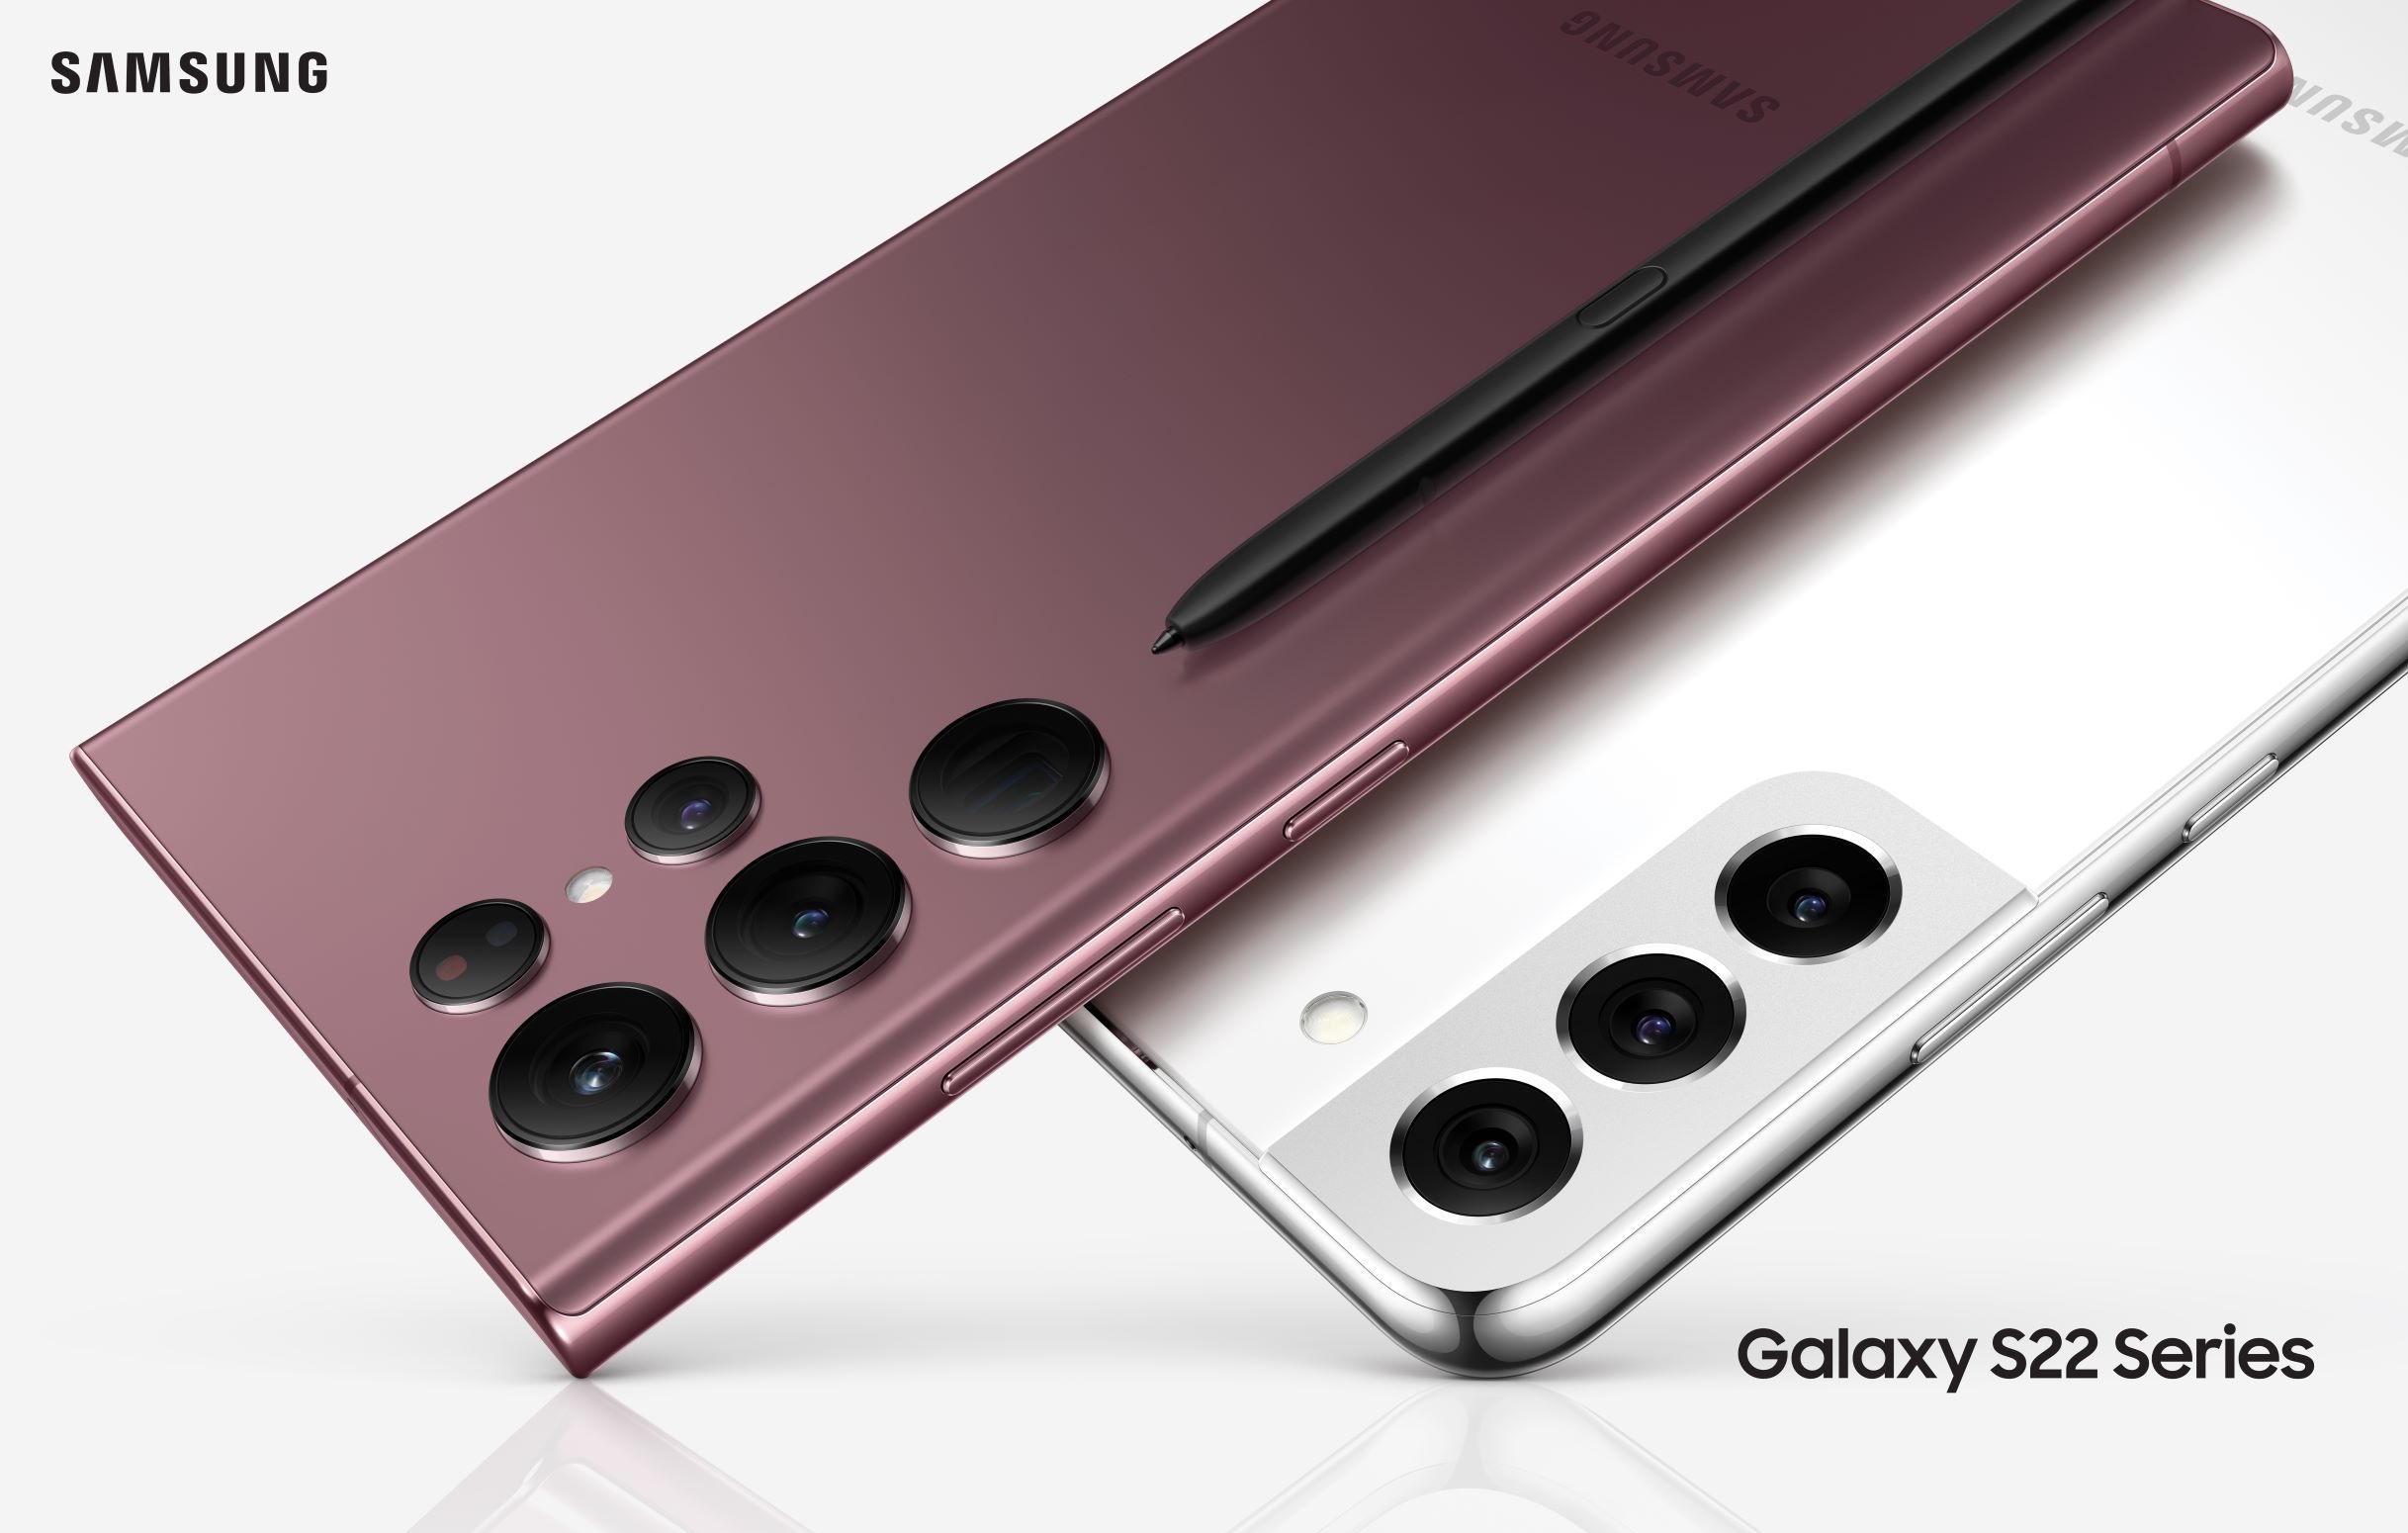 Qualcomm-Versionen des Galaxy S22, Galaxy S22+ und Galaxy S22 Ultra erhalten ab sofort One UI 5.1